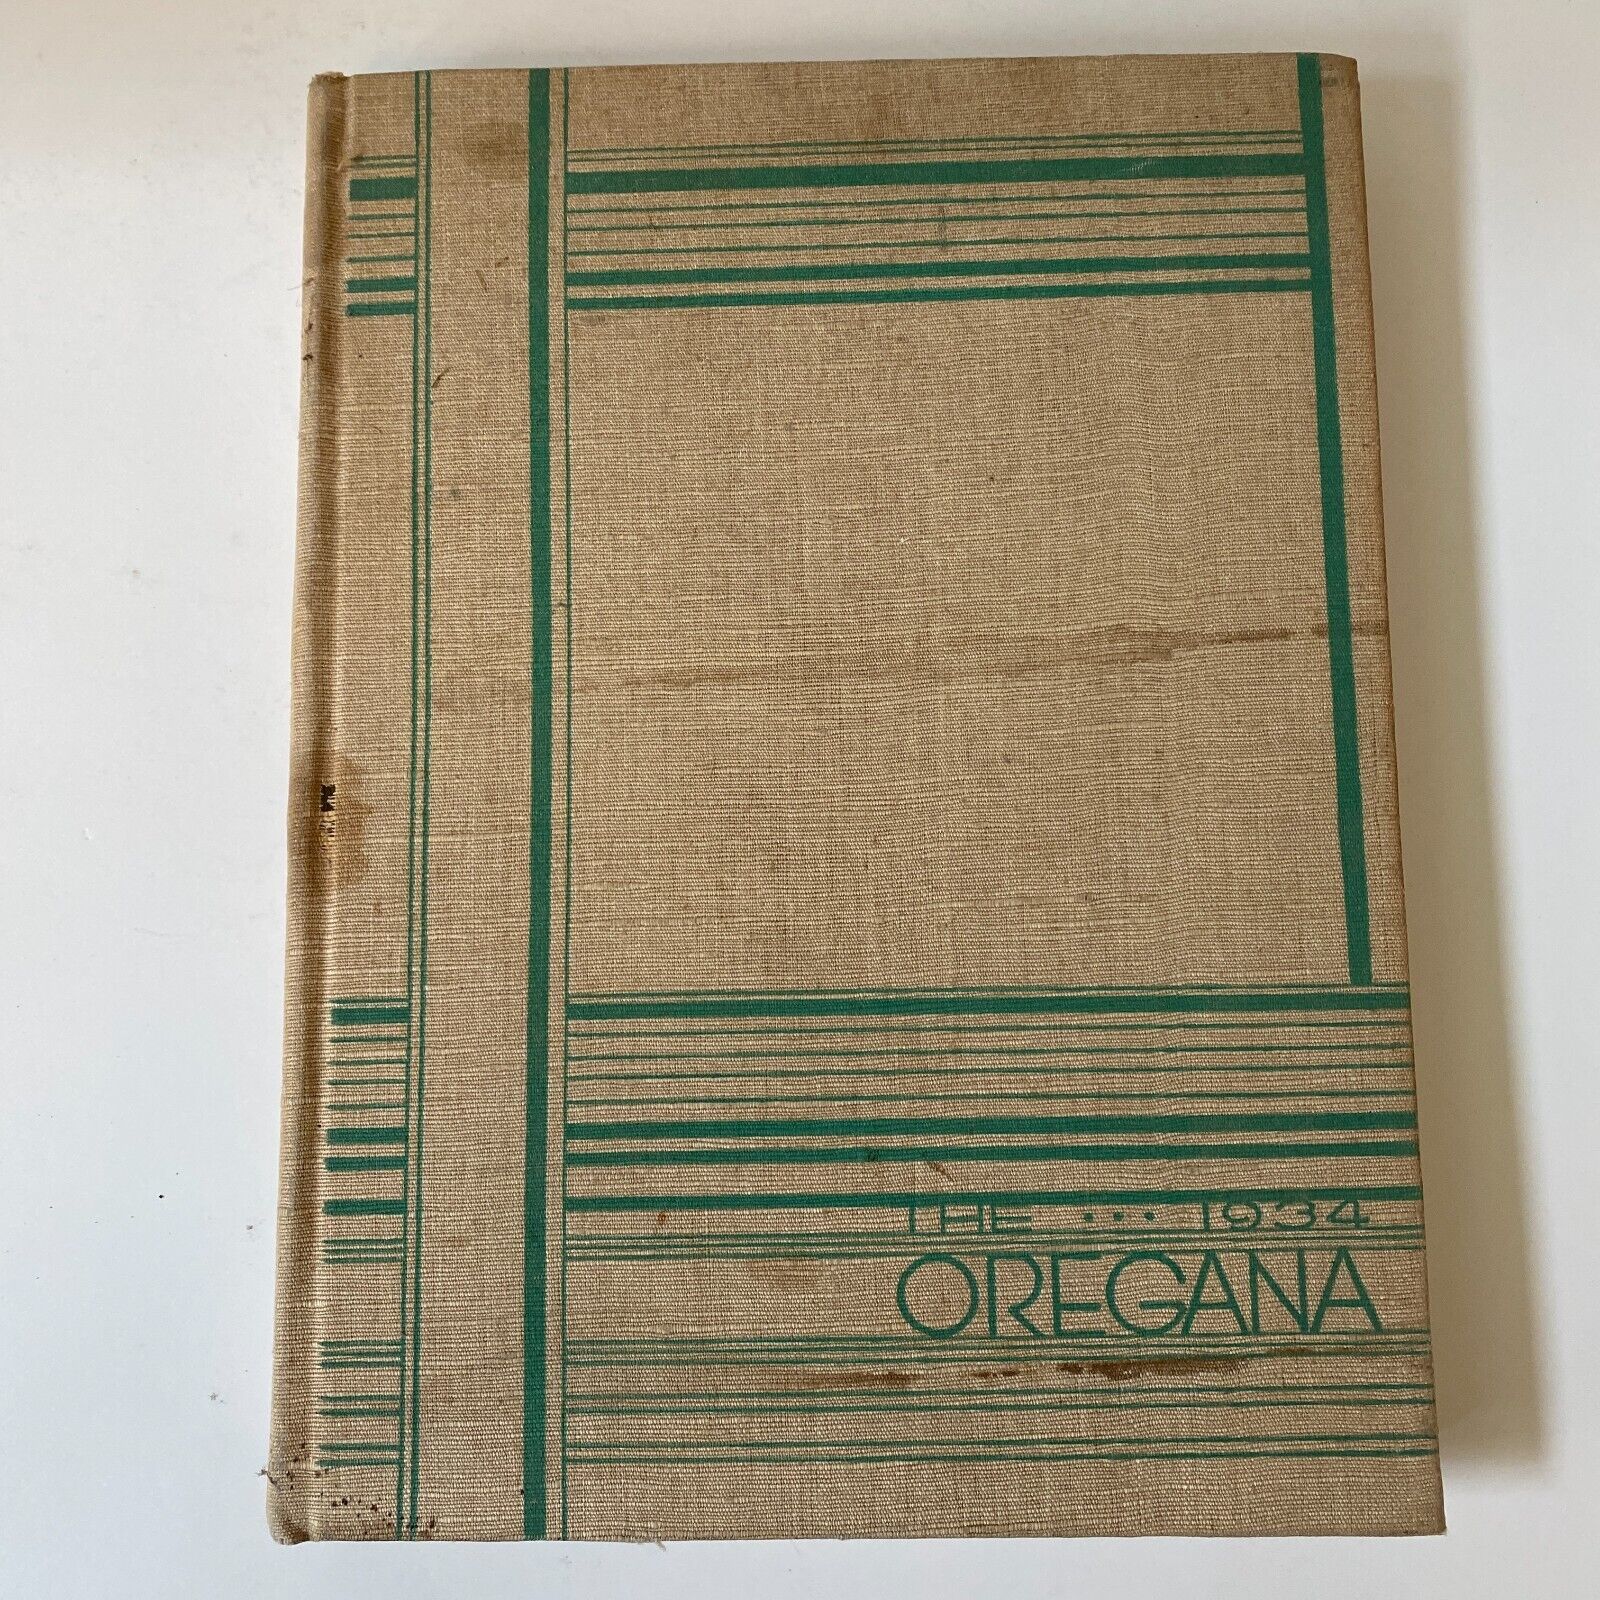 1934 University of Oregon The Oregana Yearbook Eugene OR Bowerman Nike Founder